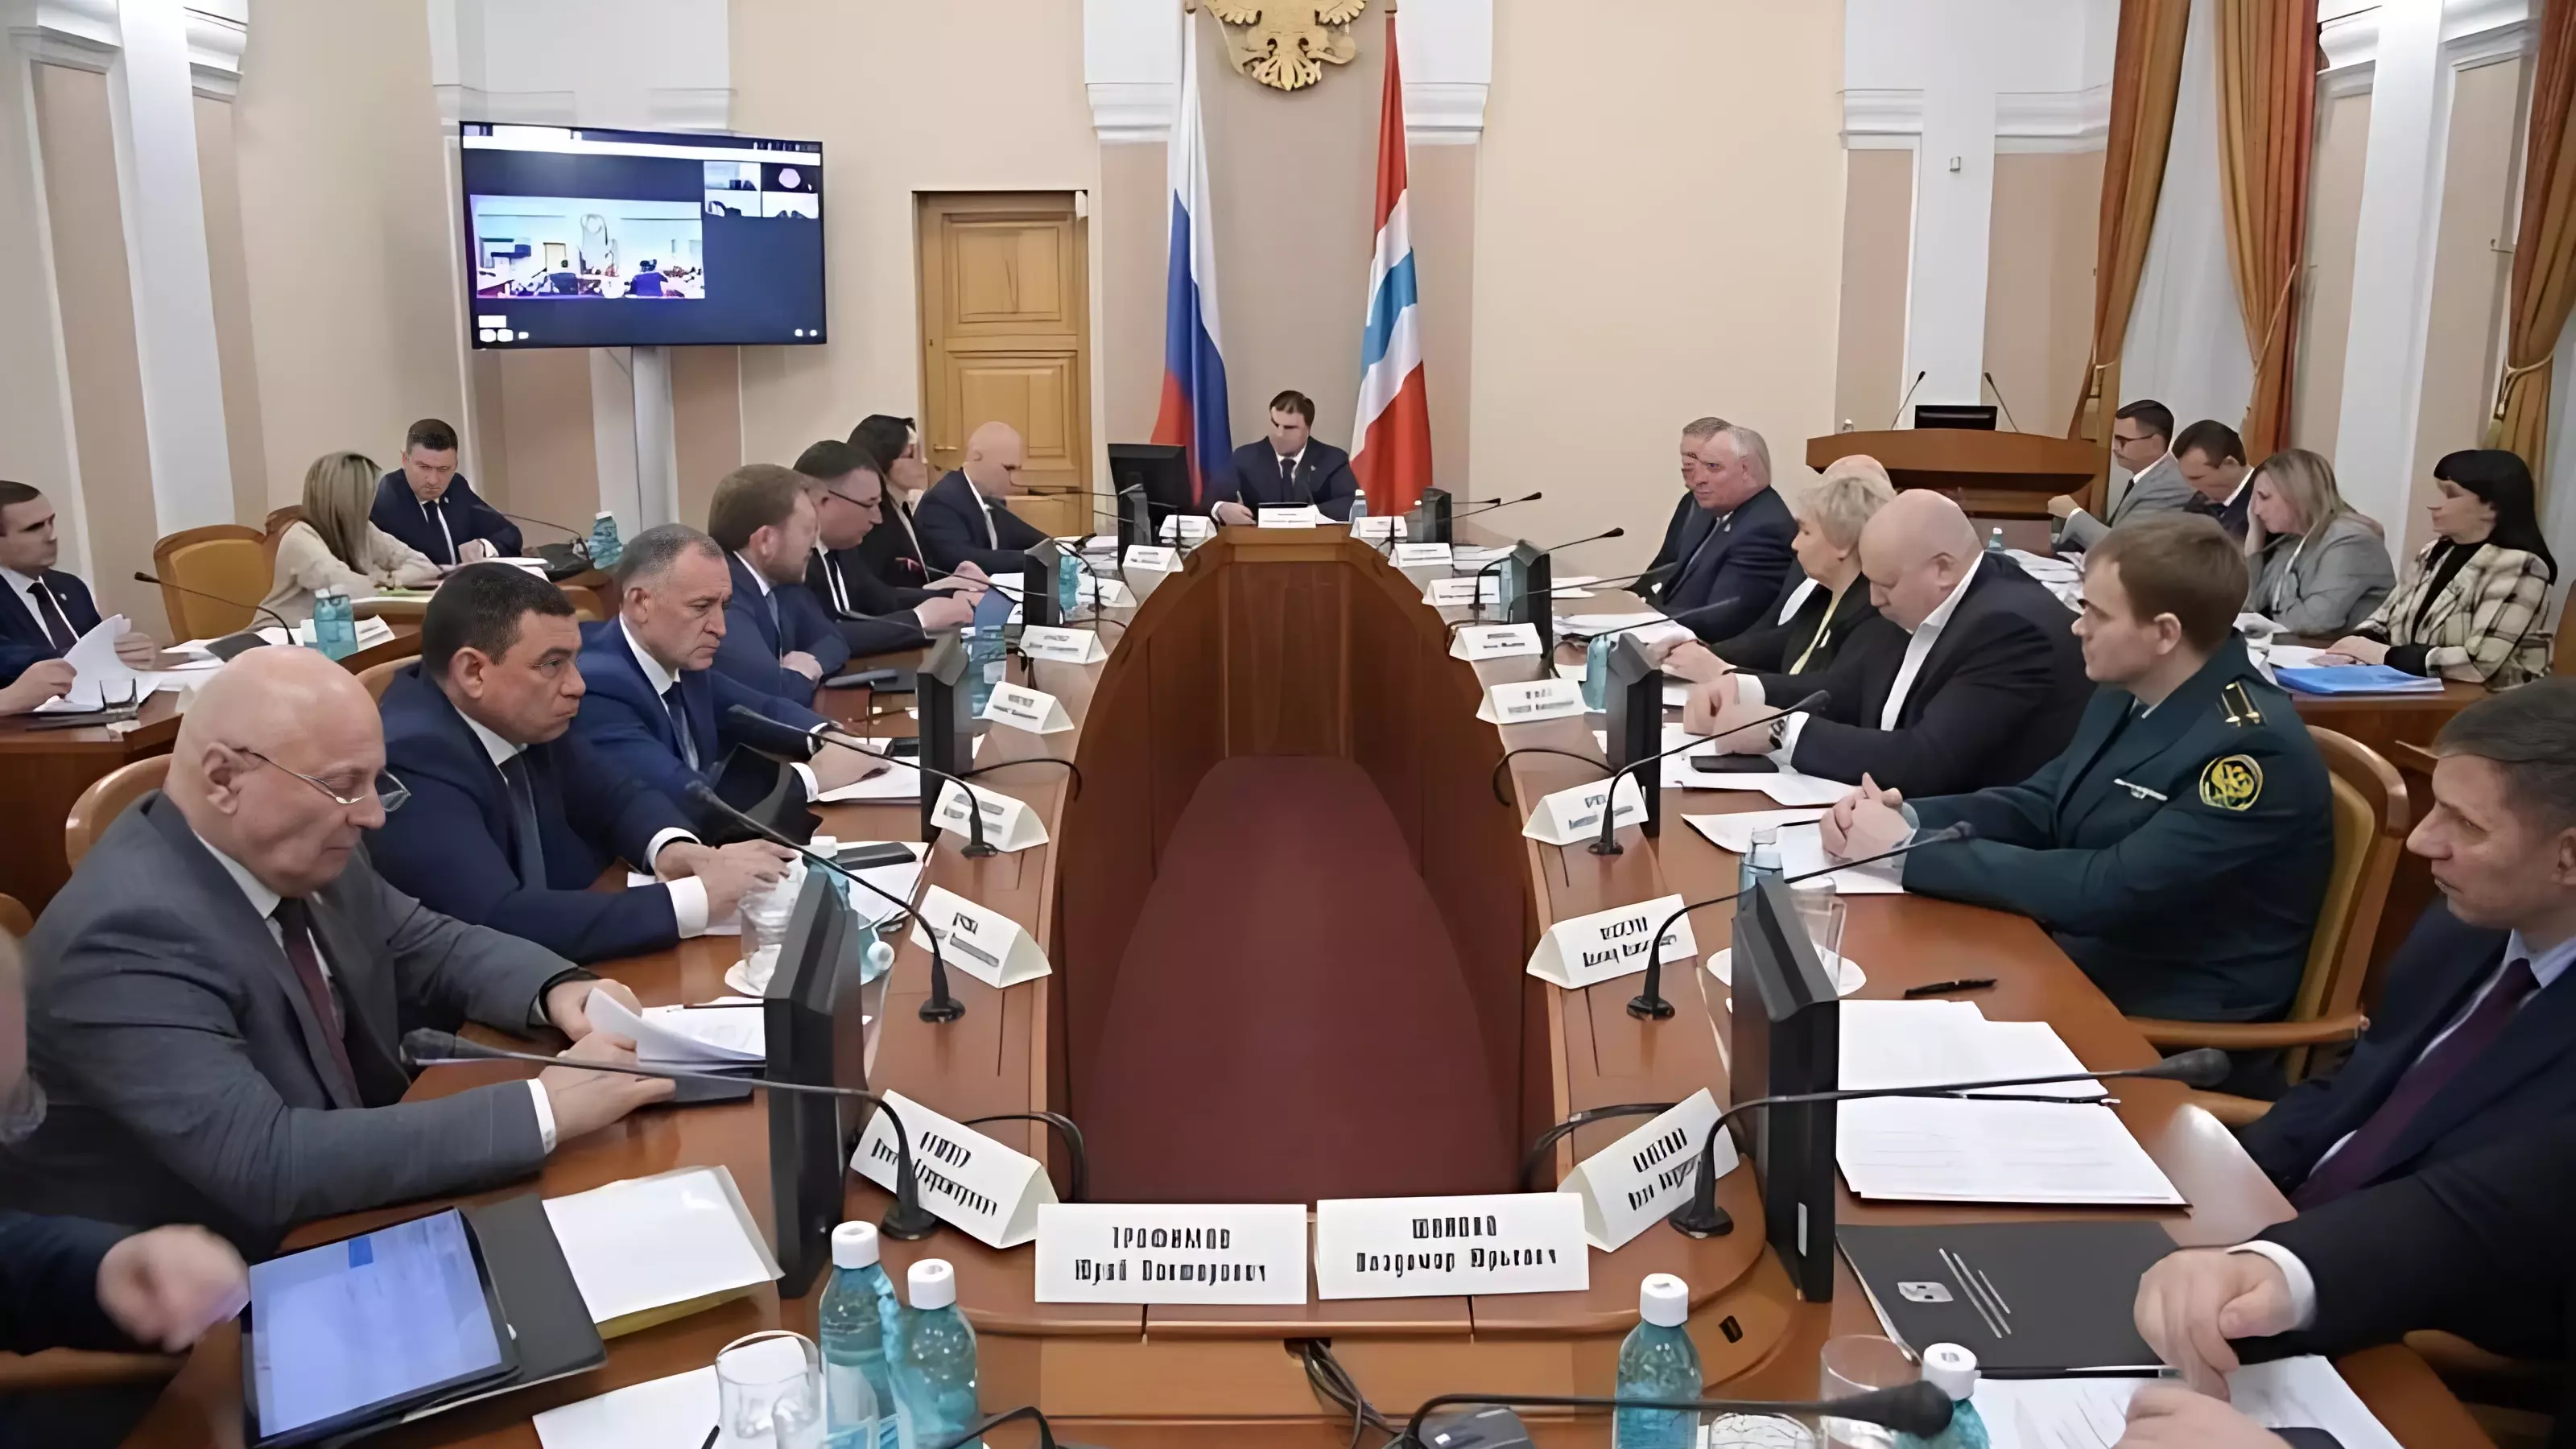 Хоценко обсудил перспективные проекты региона на заседании инвестиционного комитета